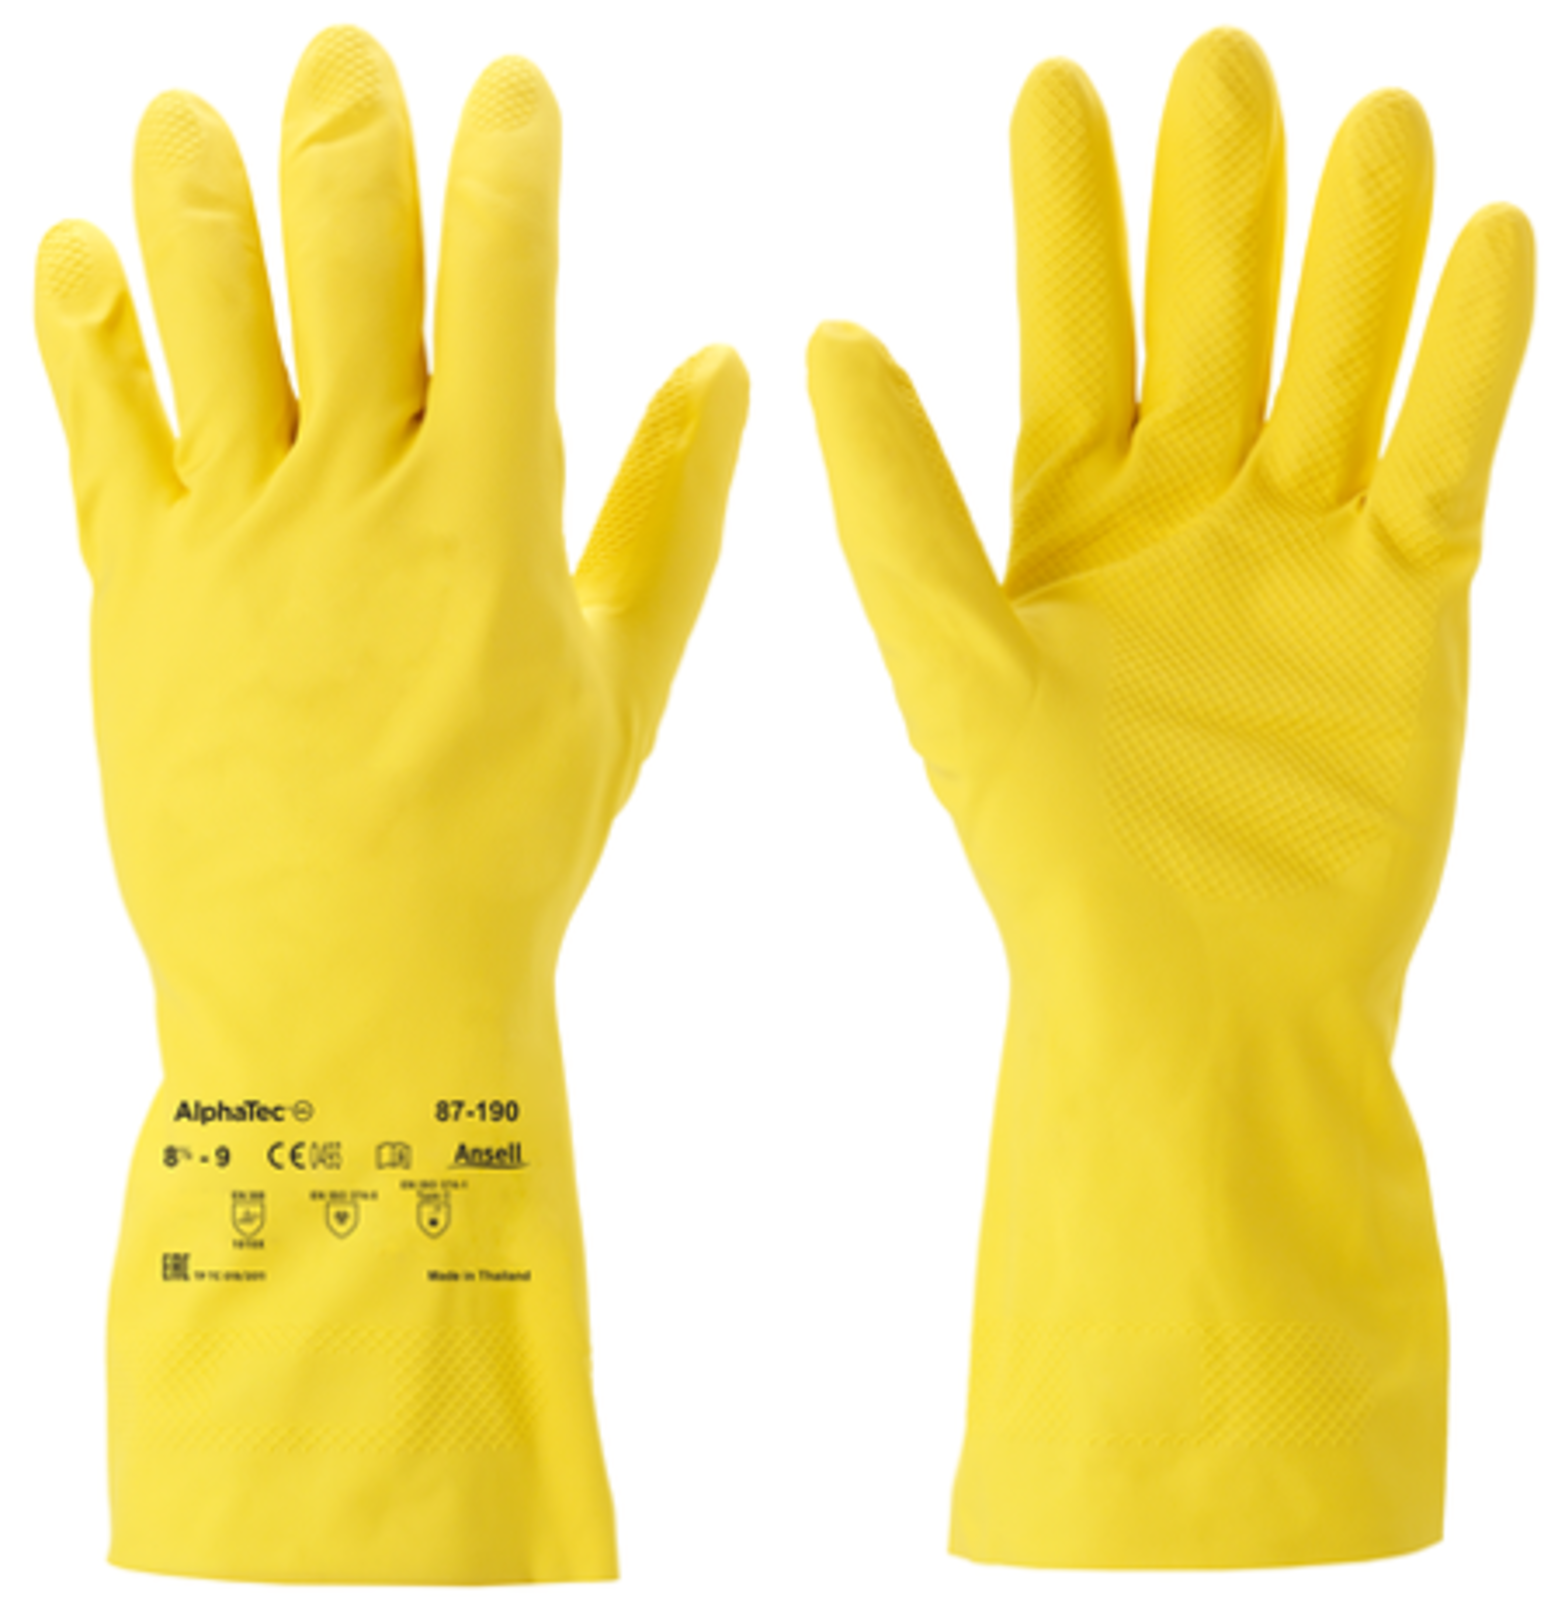 Protichemické rukavice 87-190 Econohands - veľkosť: 9/L